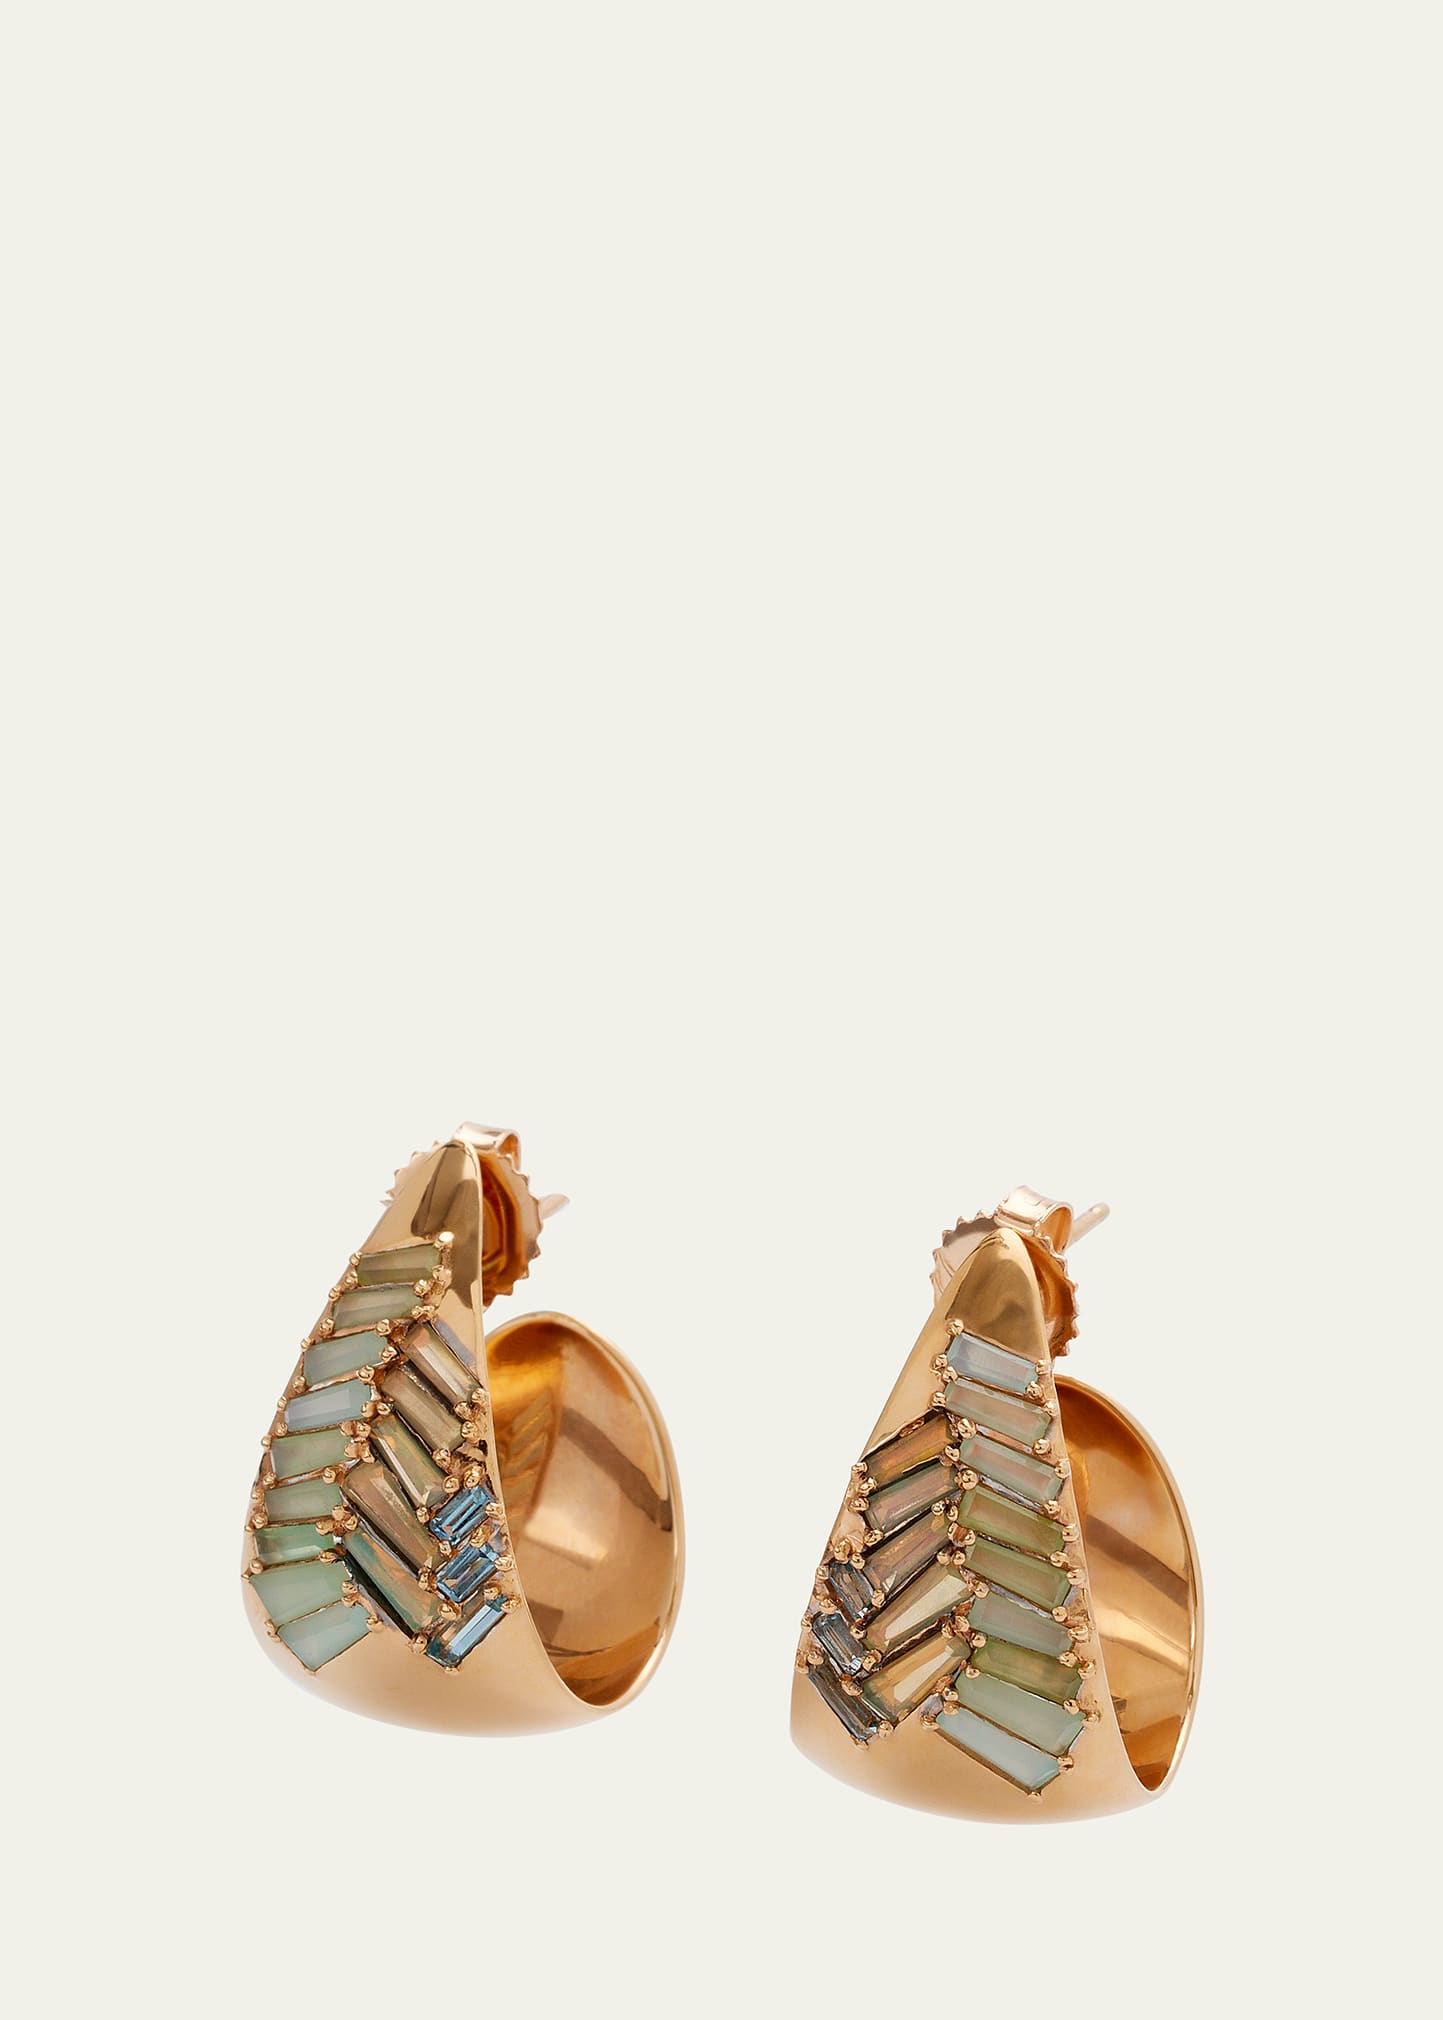 Herringbone Hoop Earrings with Opal and Aquamarine